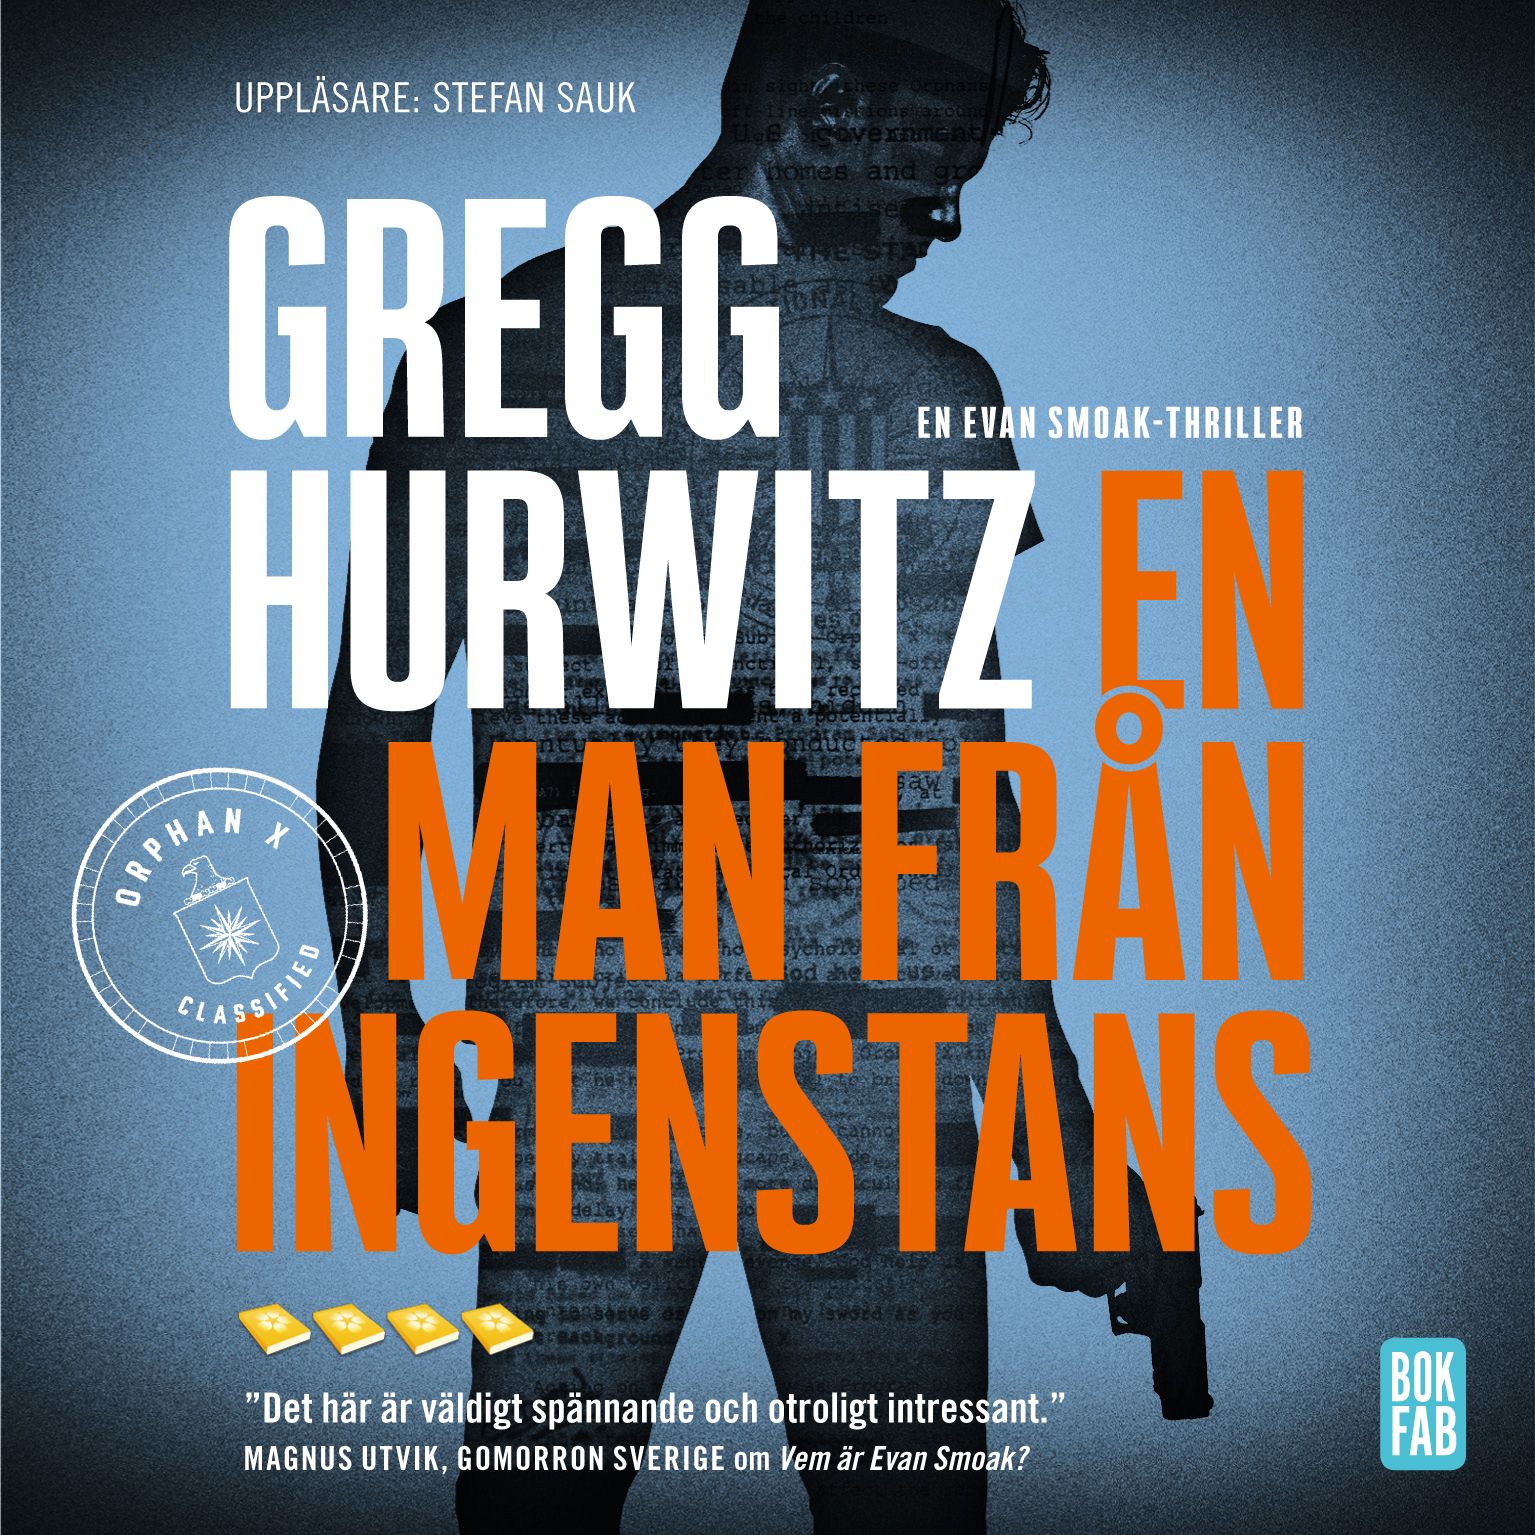 En man från ingenstans, ljudbok av Gregg Hurwitz